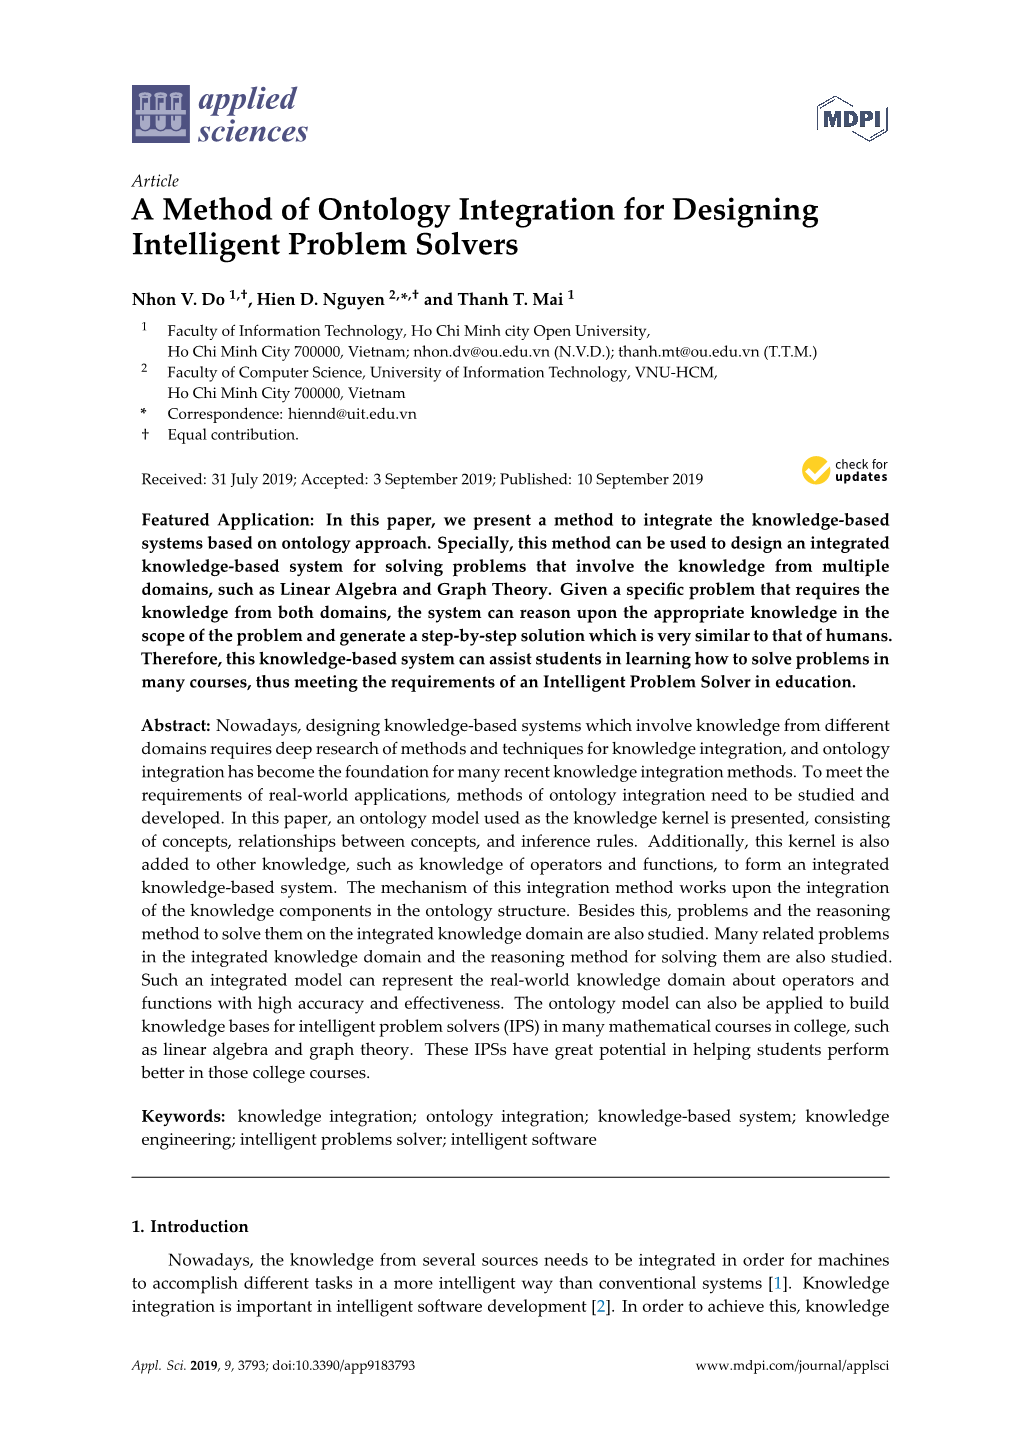 A Method of Ontology Integration for Designing Intelligent Problem Solvers